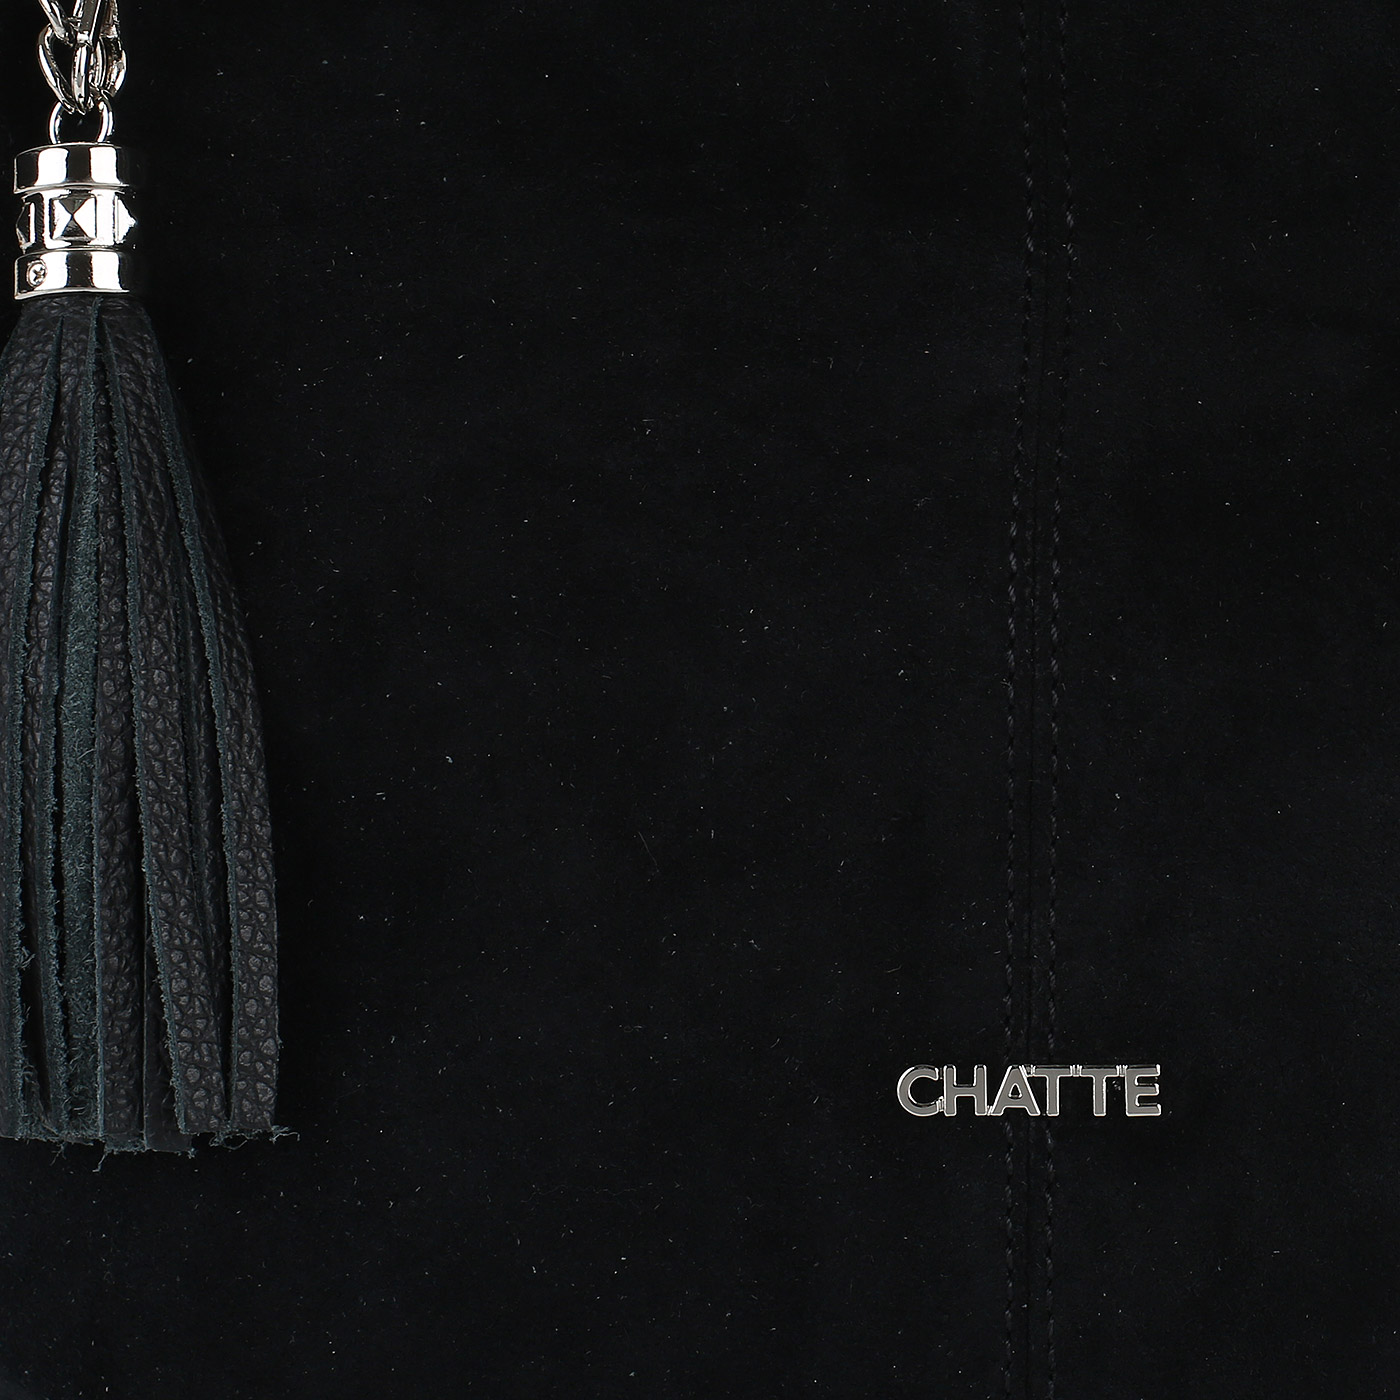 Комбинированная сумка Chatte 